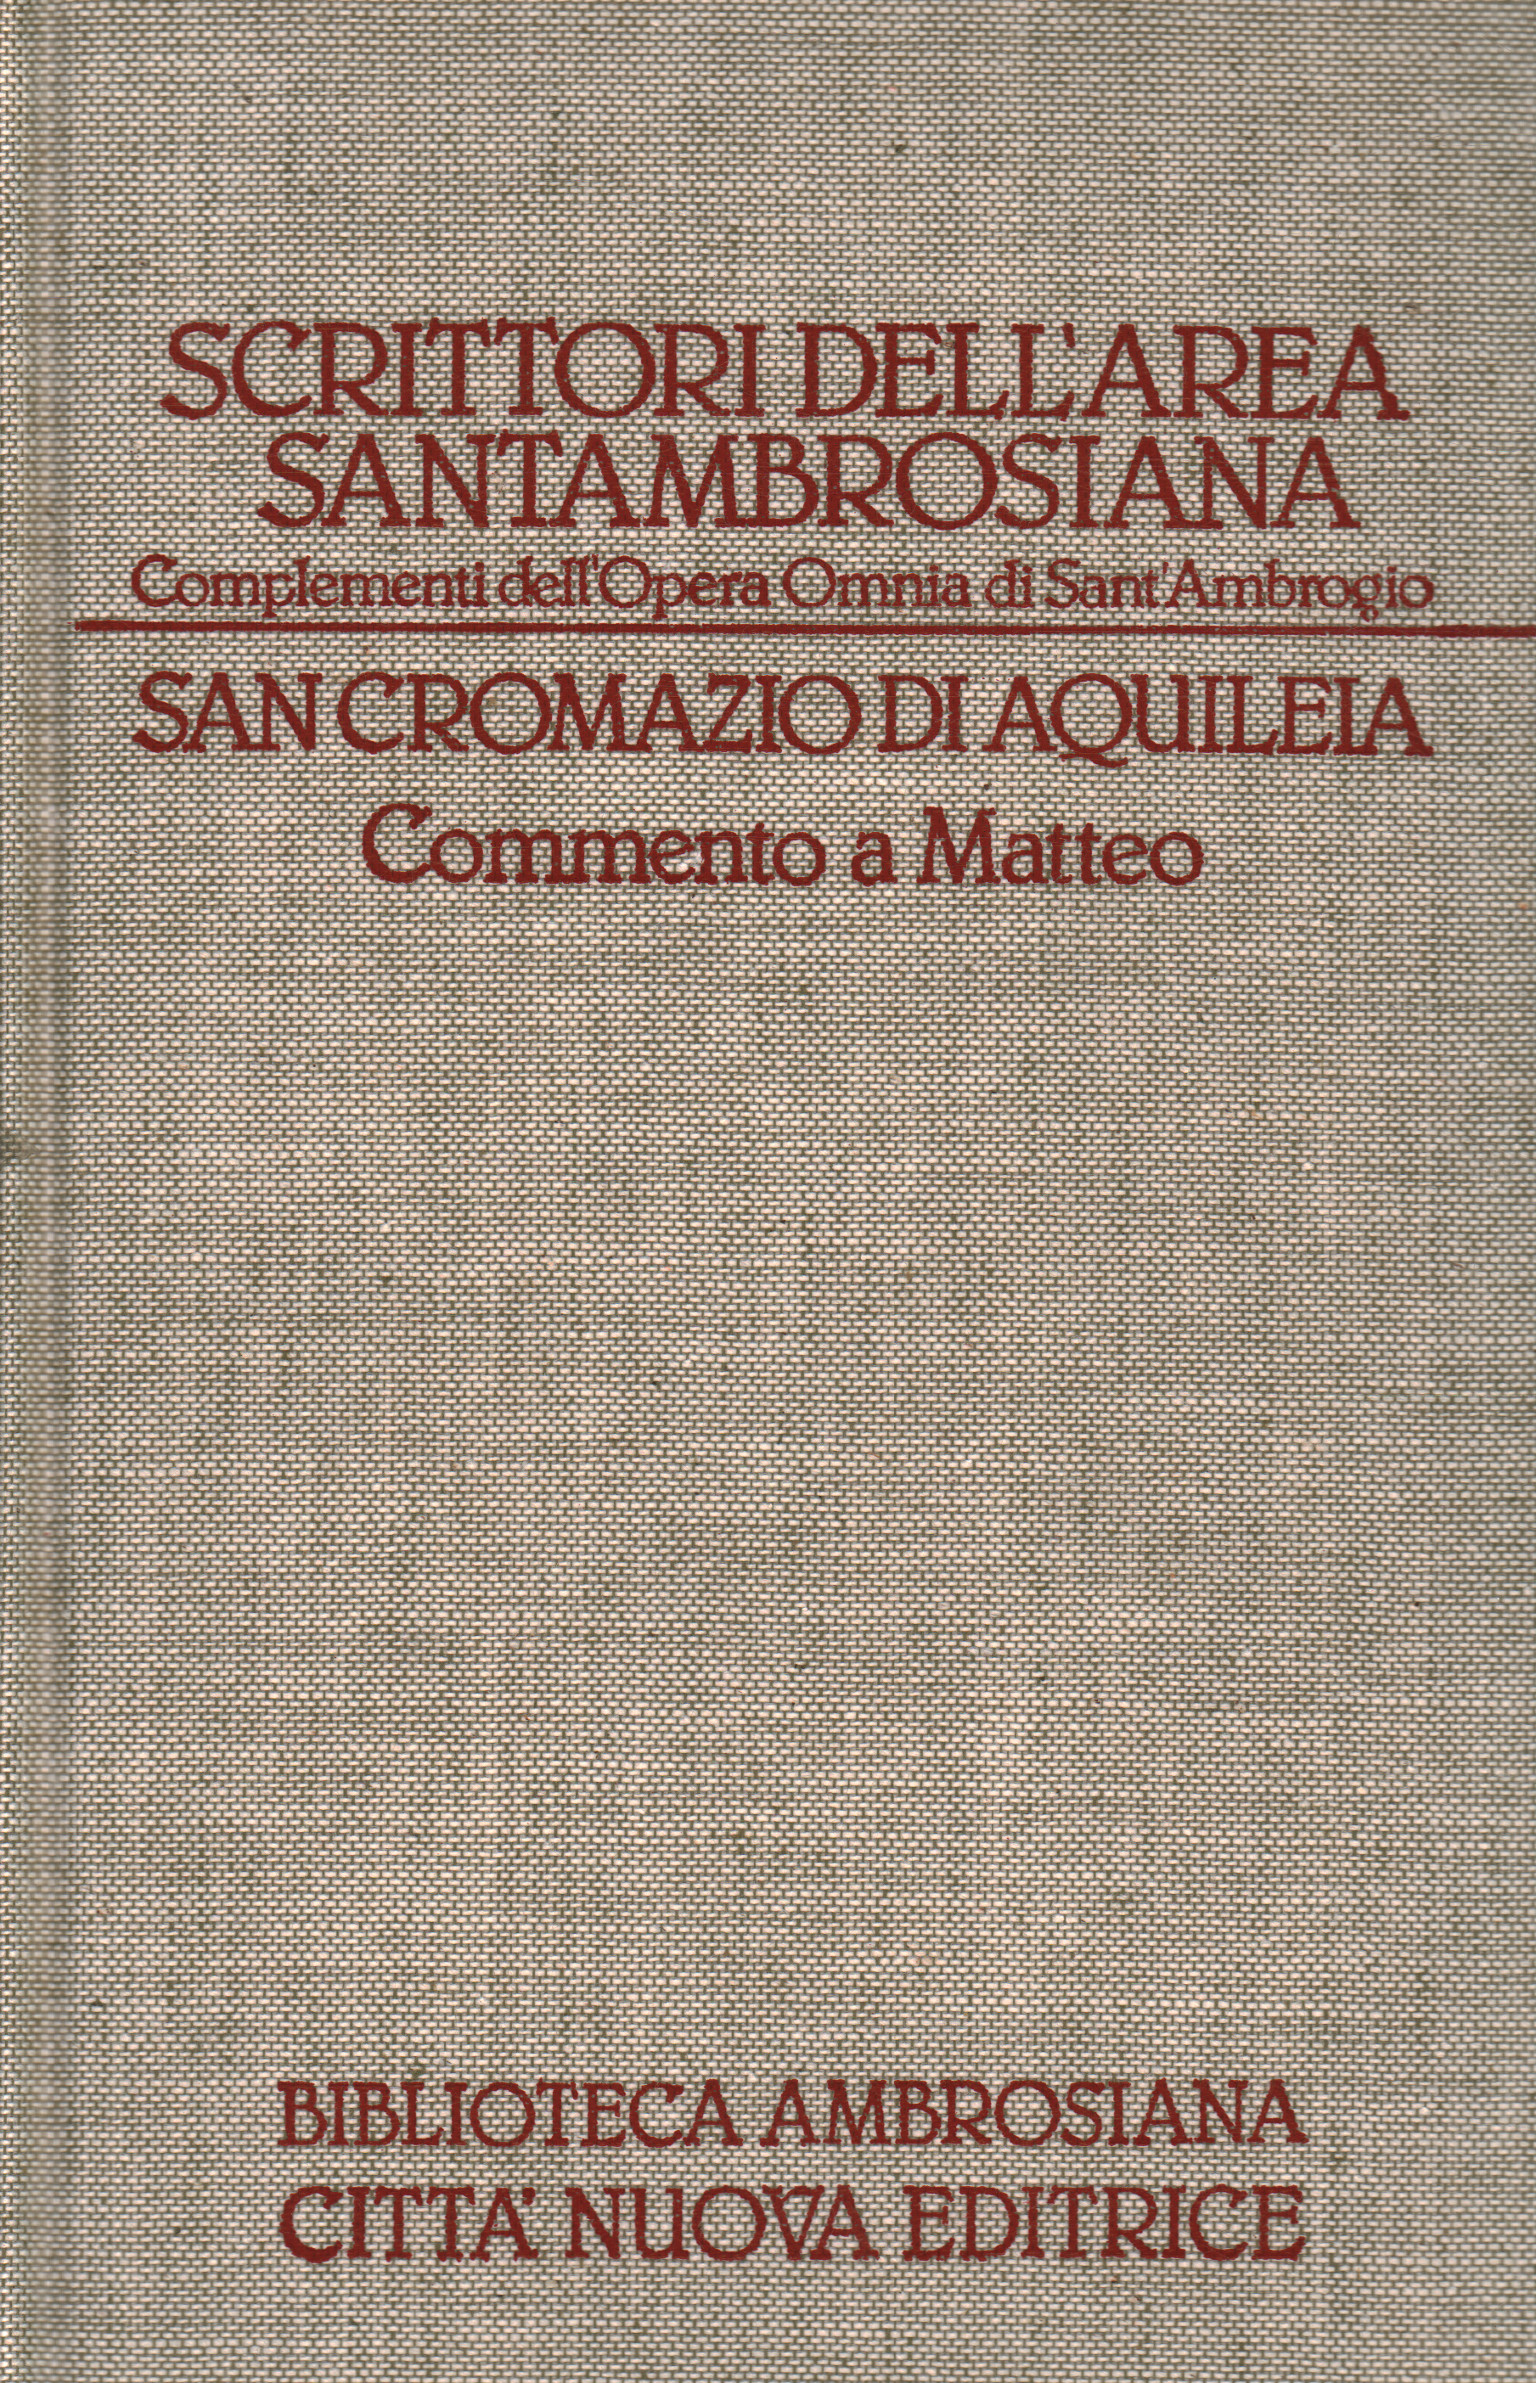 Schriftsteller der Gegend von Santambrosiana., San Cromazio di Aquileia. Kommentar zu M